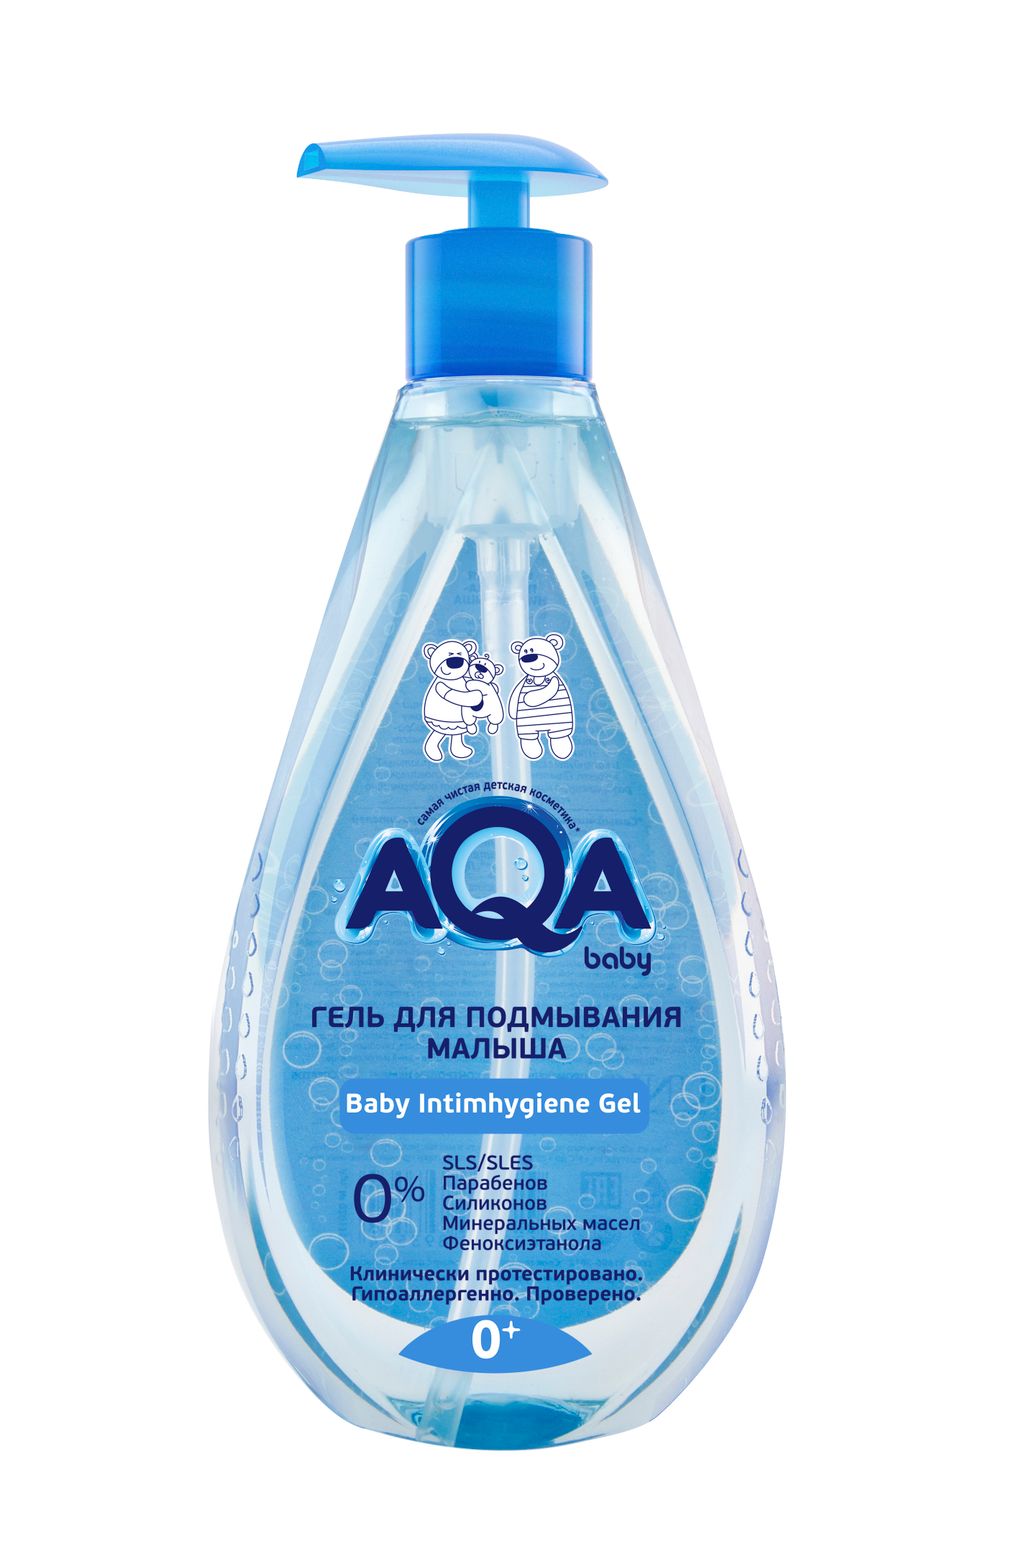 фото упаковки AQA baby гель для подмывания малыша